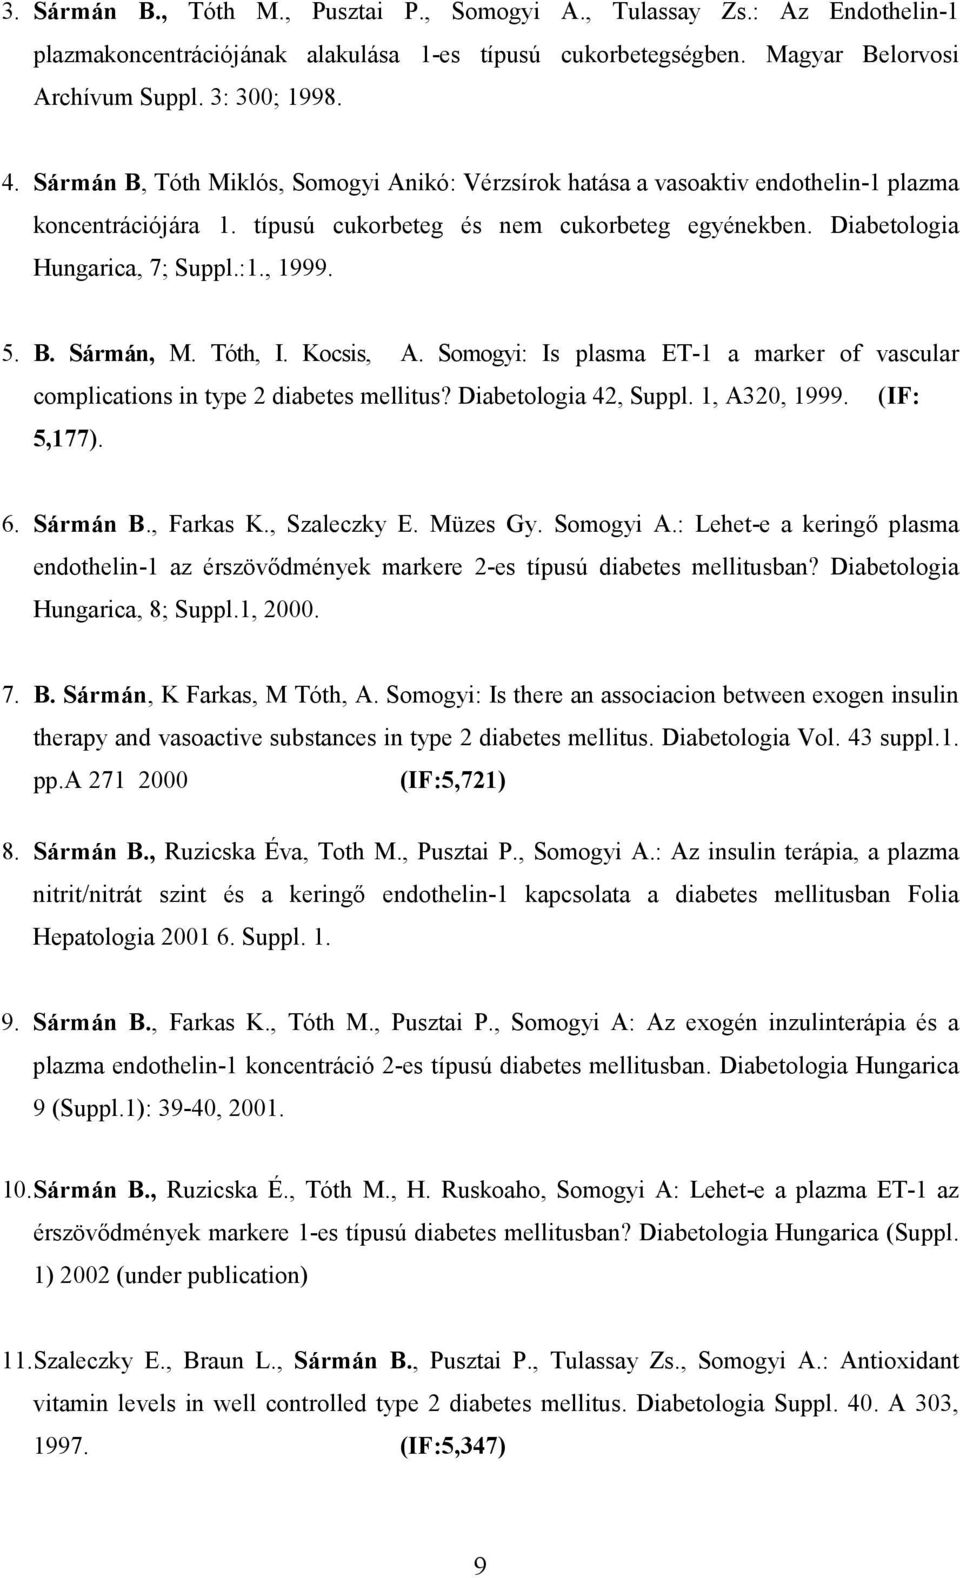 5. B. Sármán, M. Tóth, I. Kocsis, A. Somogyi: Is plasma ET-1 a marker of vascular complications in type 2 diabetes mellitus? Diabetologia 42, Suppl. 1, A320, 1999. (IF: 5,177). 6. Sármán B., Farkas K.